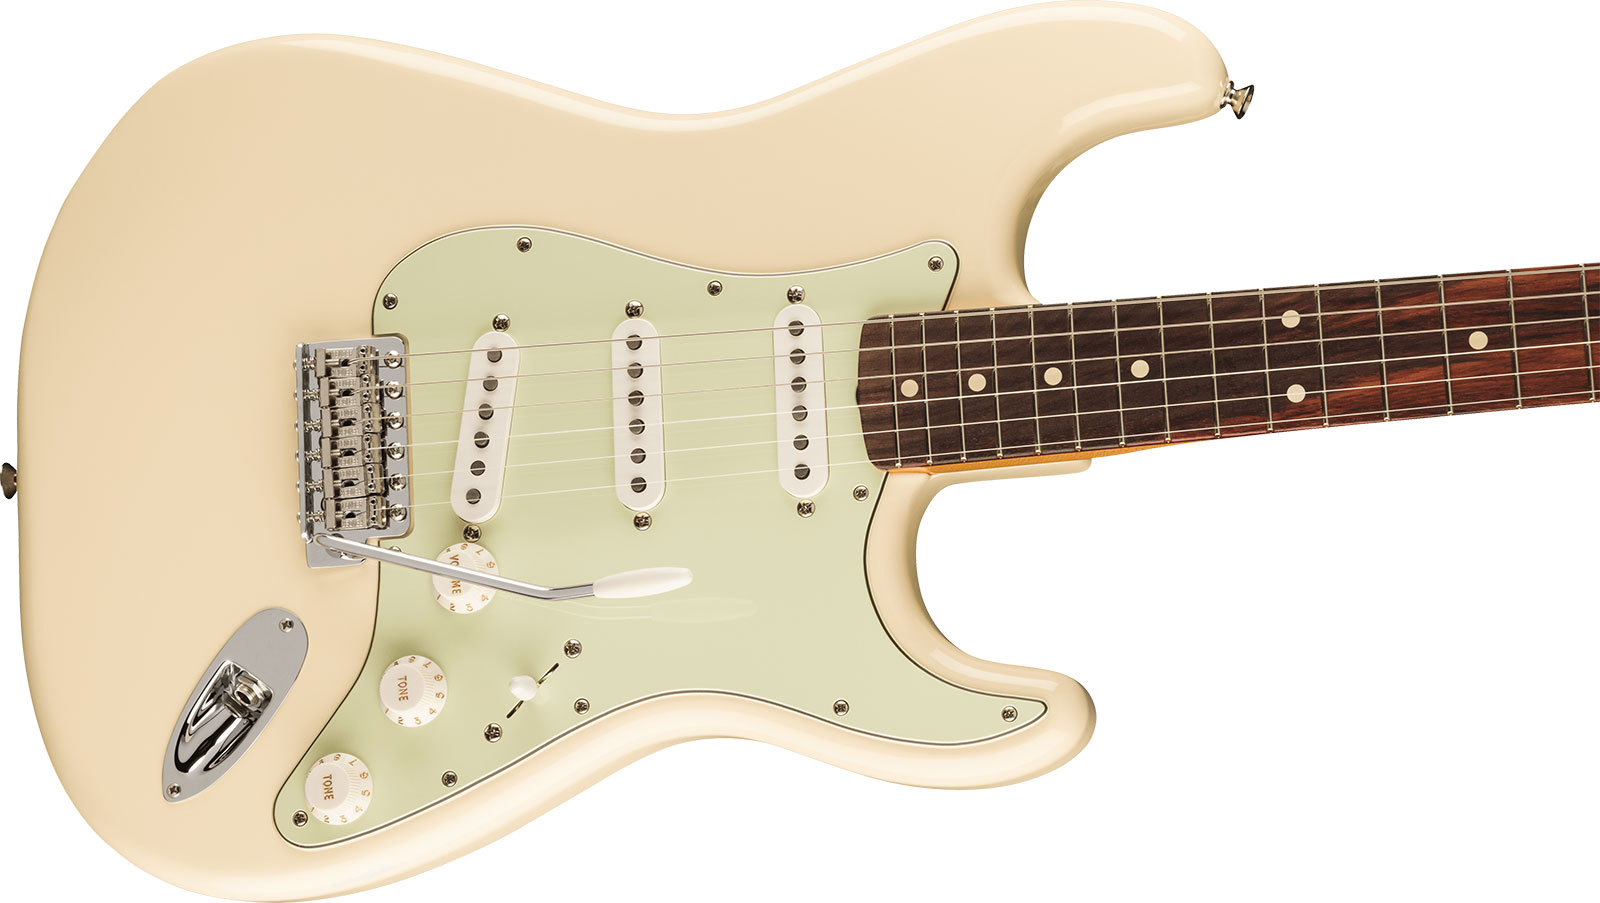 Fender Strat 60s Vintera 2 Mex 3s Trem Rw - Olympic White - Guitare Électrique Forme Str - Variation 2